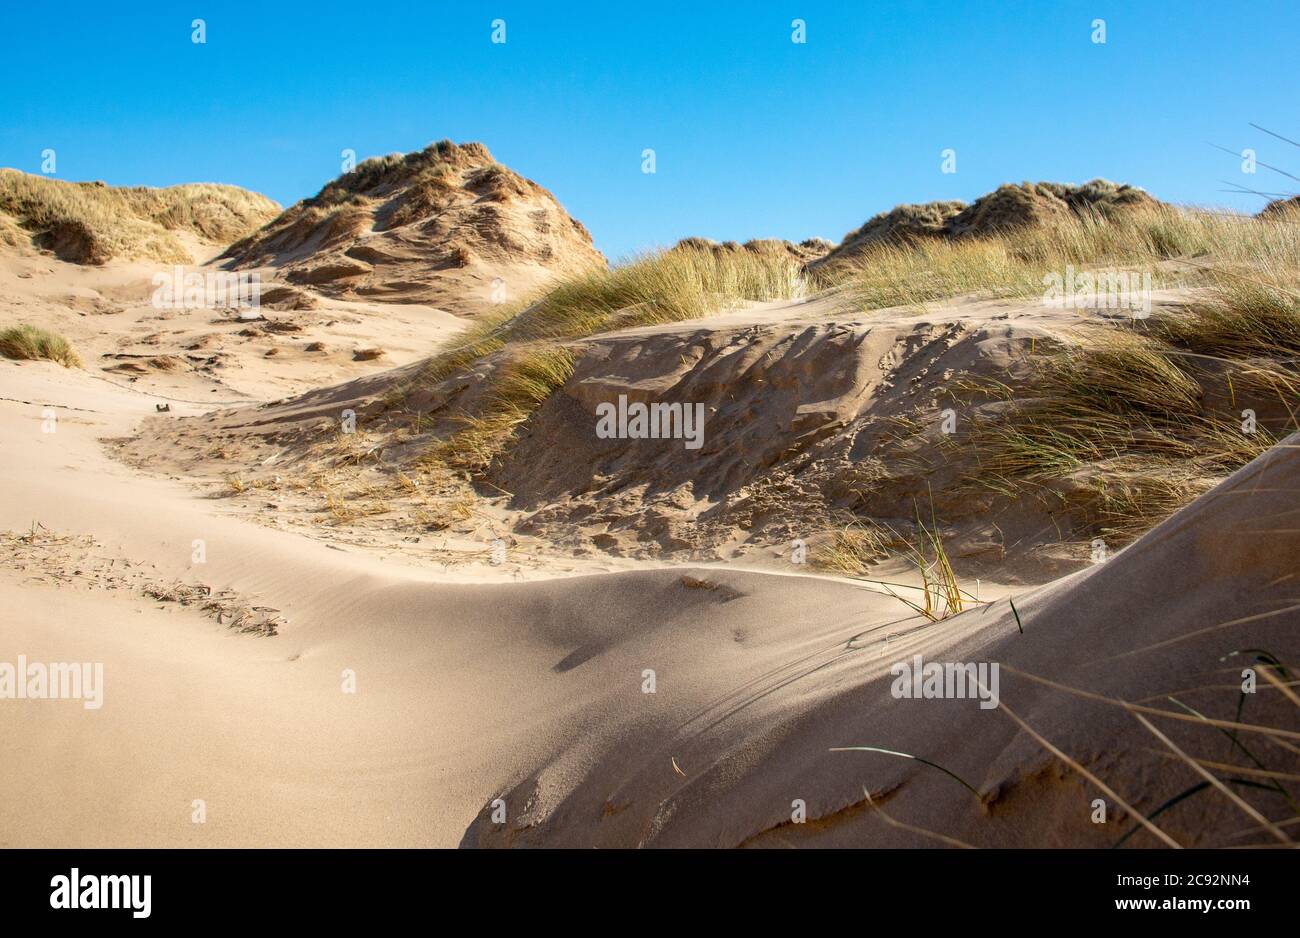 Sand dunes, Formby beach, Formby, Merseyside. Stock Photo